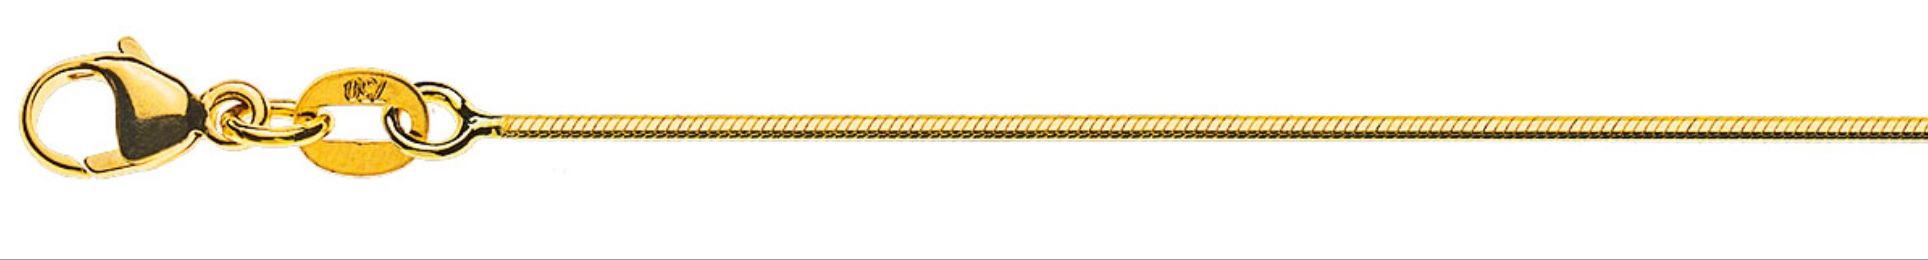 AURONOS Prestige Collier en or jaune 18K serpent diamanté 40cm 1.0mm